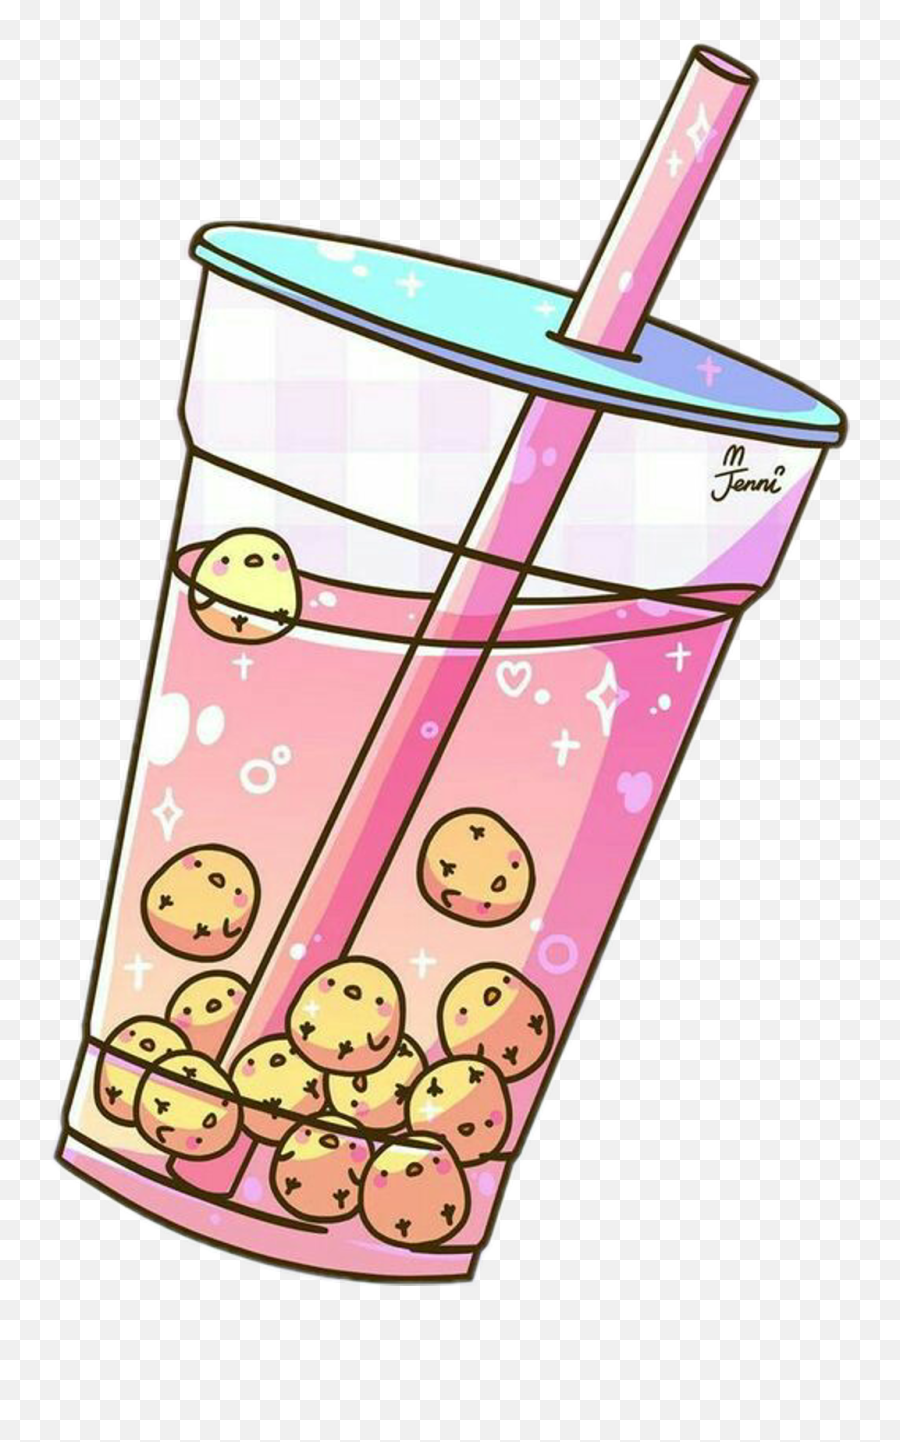 Aesthetic Bubble Tea Sticker Clipart - Jenni Illustrations Bubble Tea Emoji,Boba Png